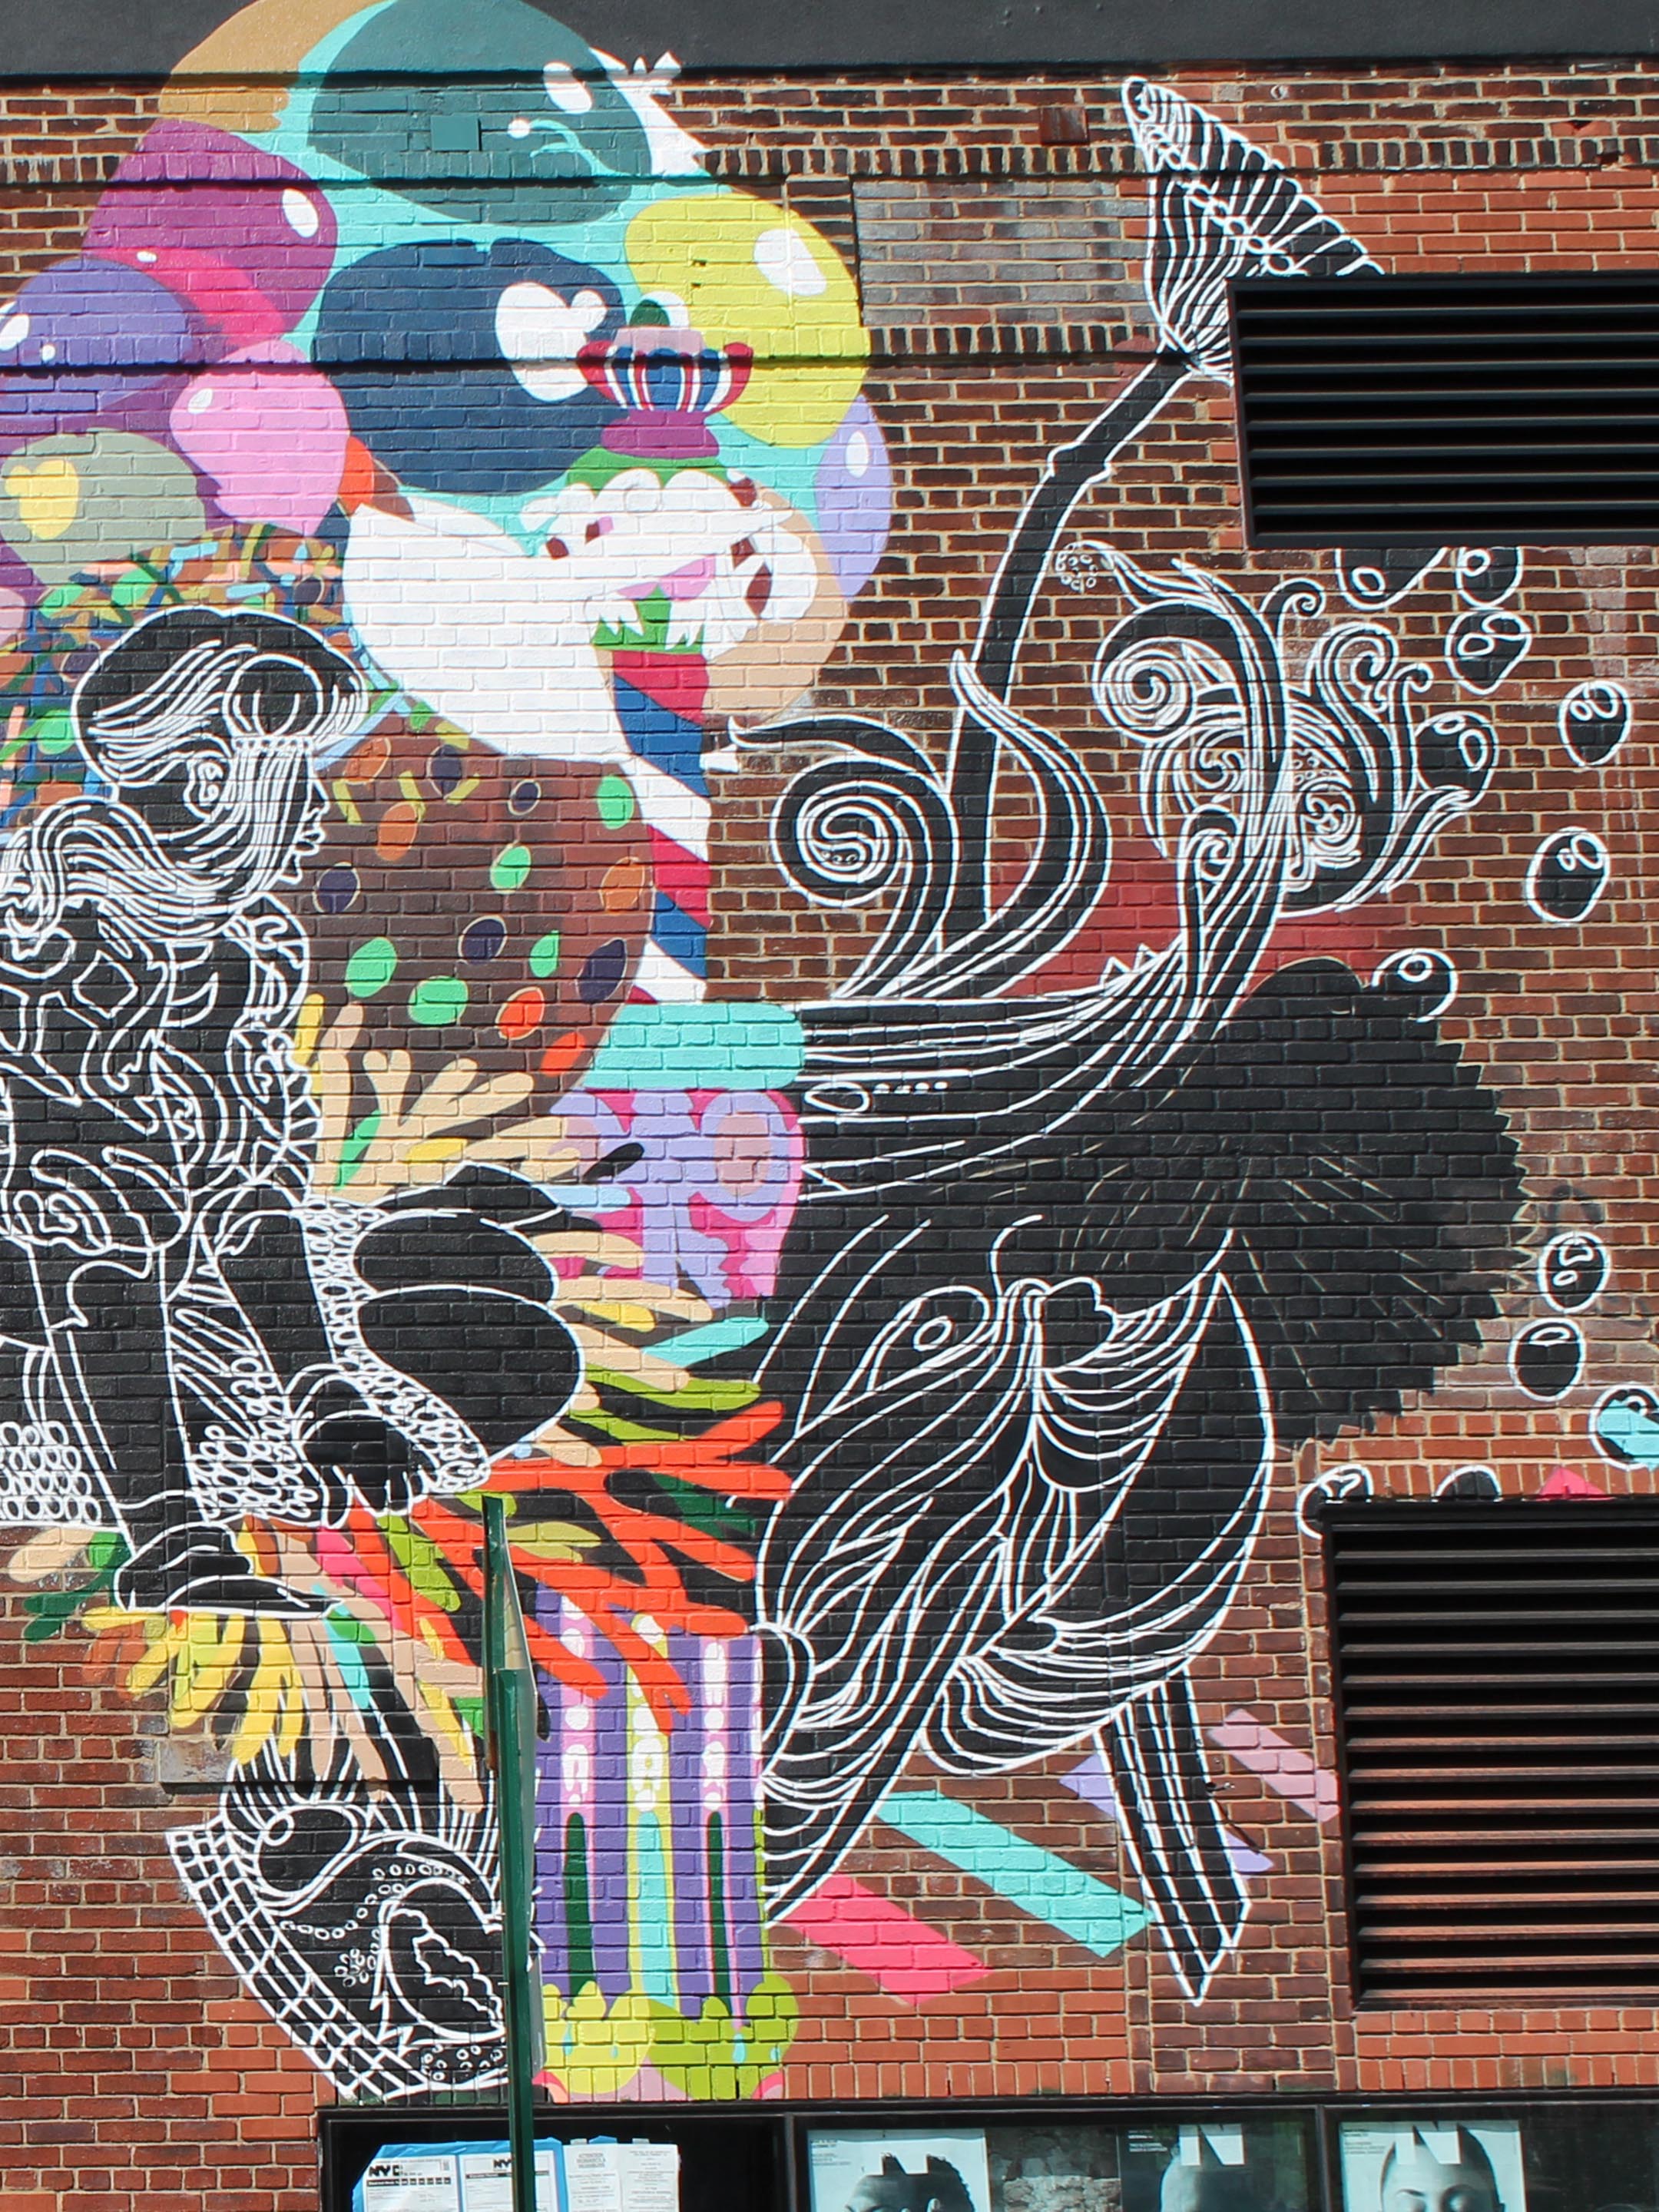 Street Art - New York (I)